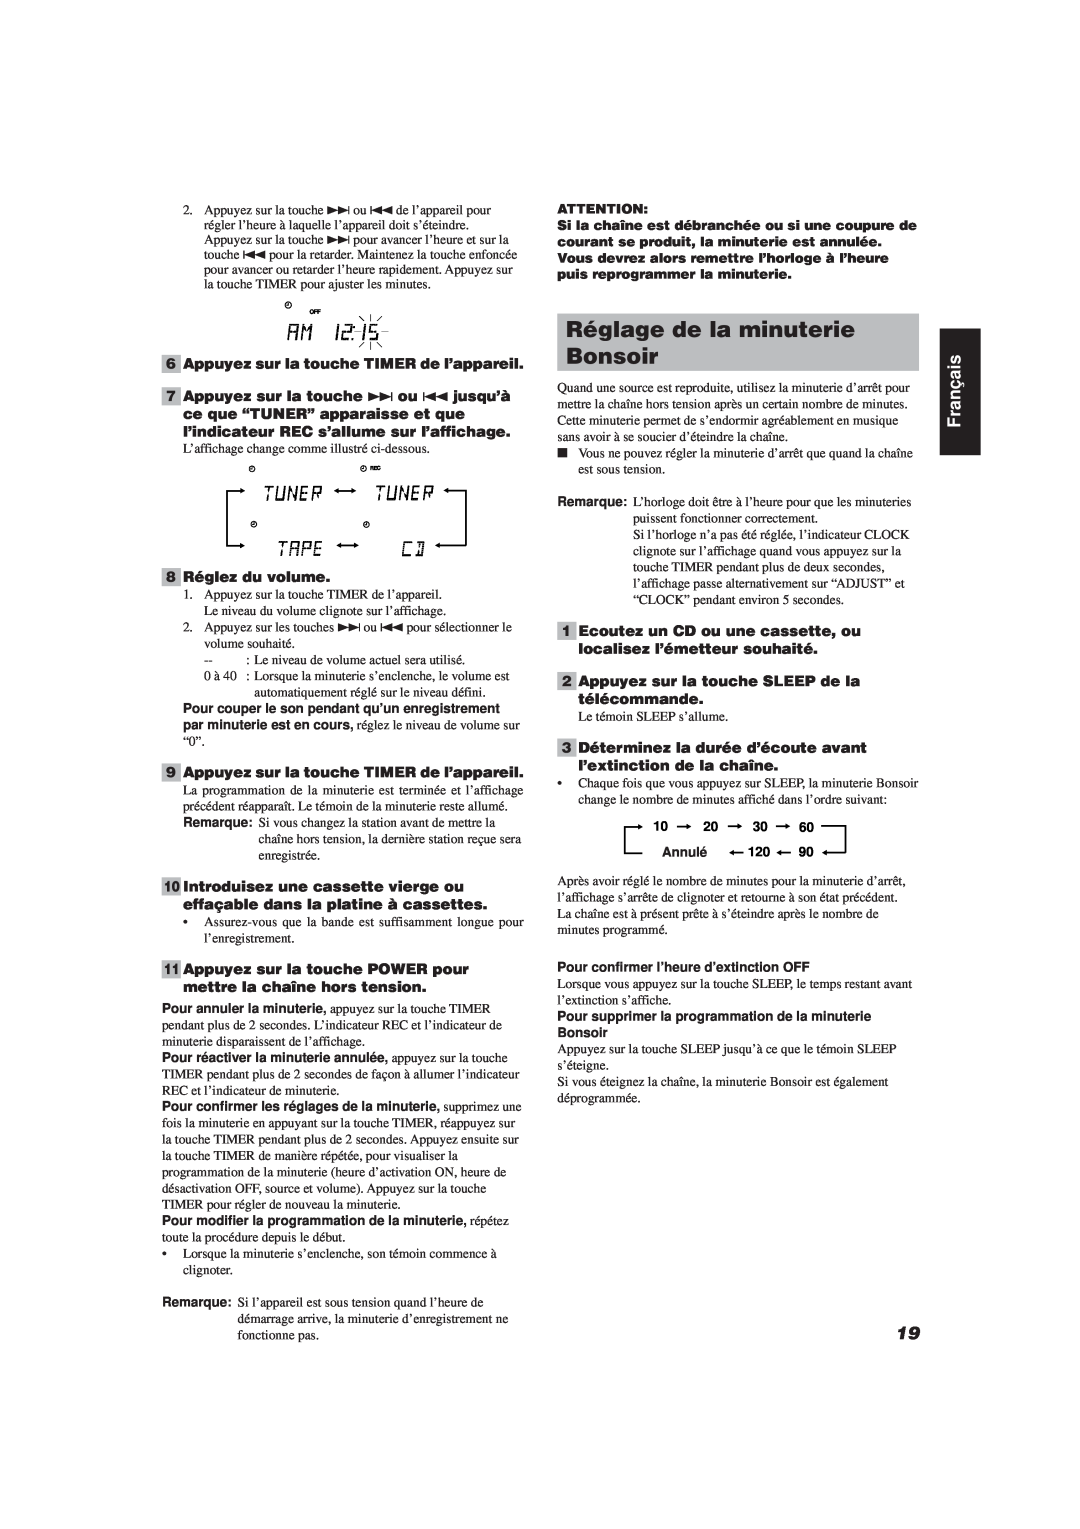 JVC FS-V30 manual Réglage de la minuterie, Bonsoir, 6Appuyez sur la touche TIMER de l’appareil, 8Réglez du volume, Français 